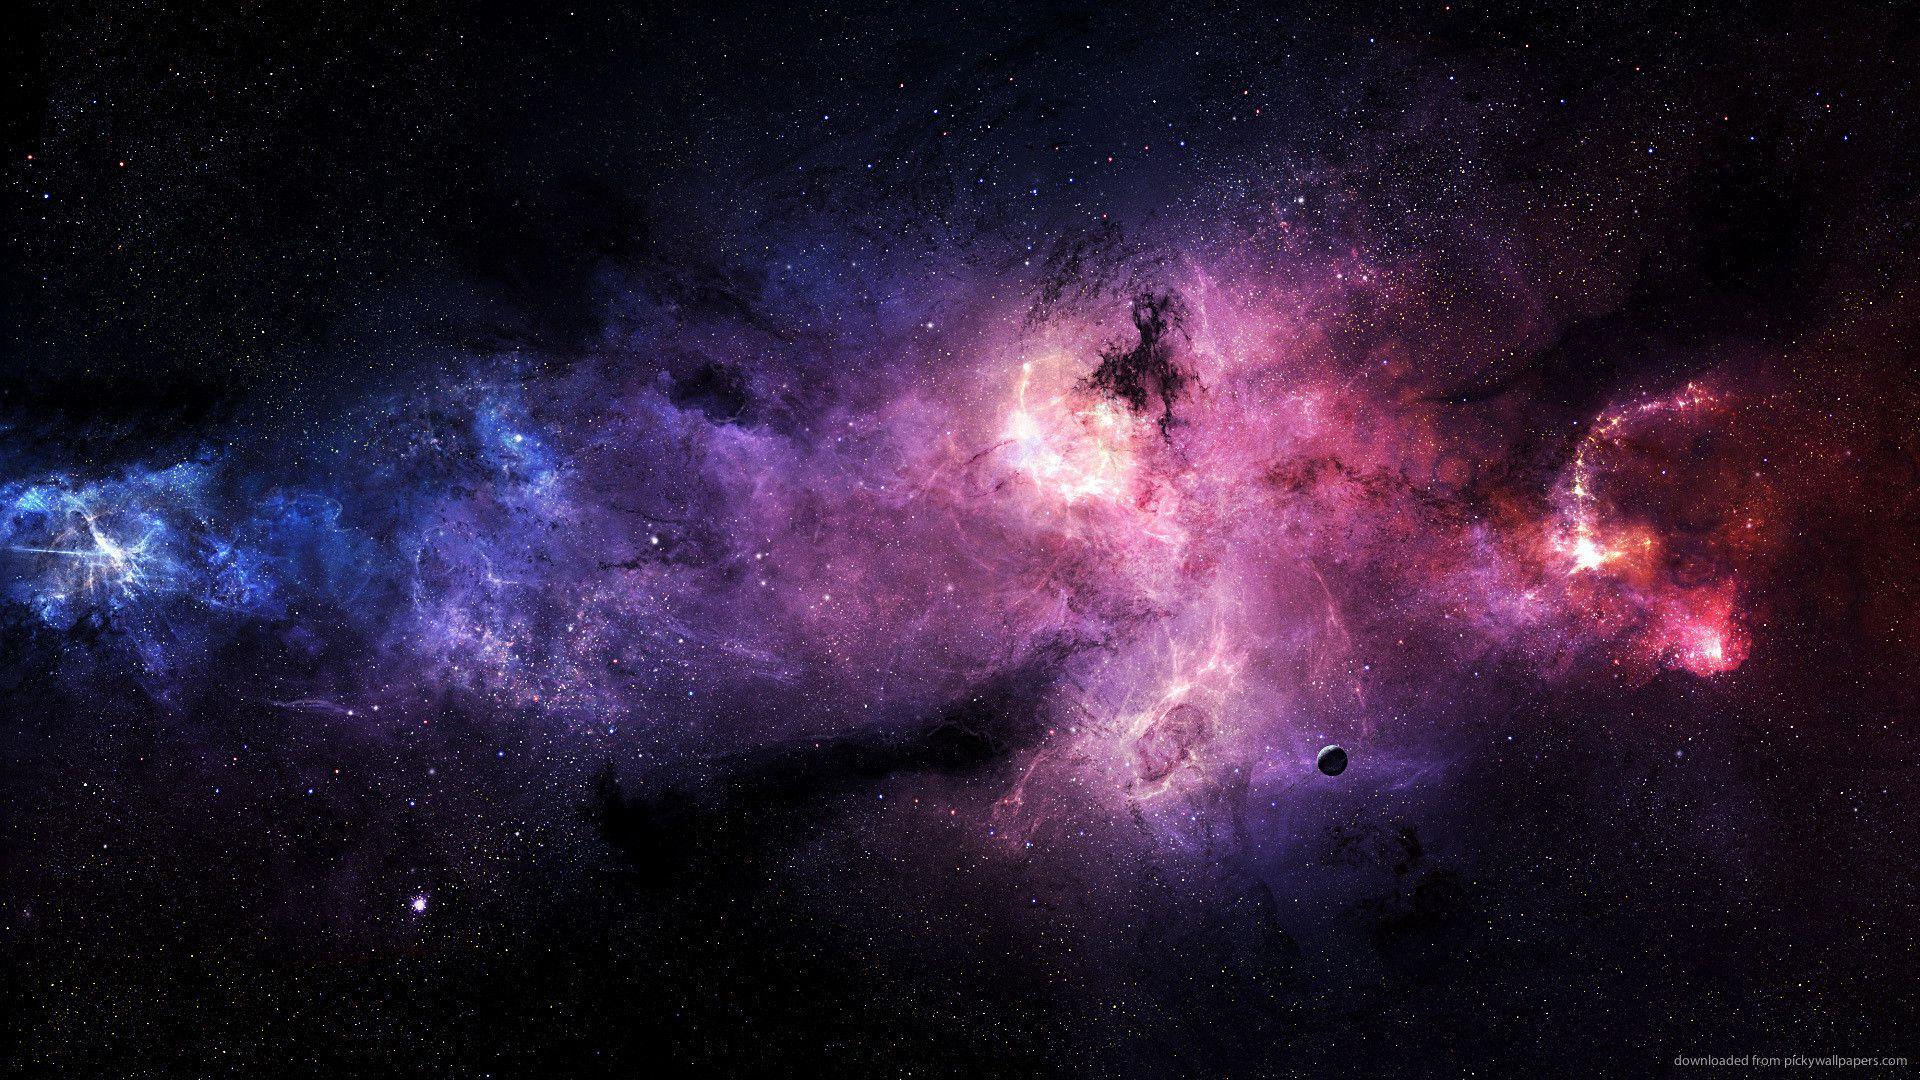 Hình nền galaxy 1920x1080: Với độ phân giải cao 1920x1080, hình nền galaxy sẽ giúp cho màn hình của bạn trở nên sống động và sắc nét hơn bao giờ hết. Với những tiểu tiết tinh tế được tạo ra bởi sự kết hợp tuyệt vời giữa màu sắc và ánh sáng của vũ trụ, bạn sẽ được đưa vào thế giới phiêu lưu và khoa học viễn tưởng của thế giới ngoài kia. Tải xuống hình nền galaxy 1920x1080 ngay để trải nghiệm sự khác biệt!